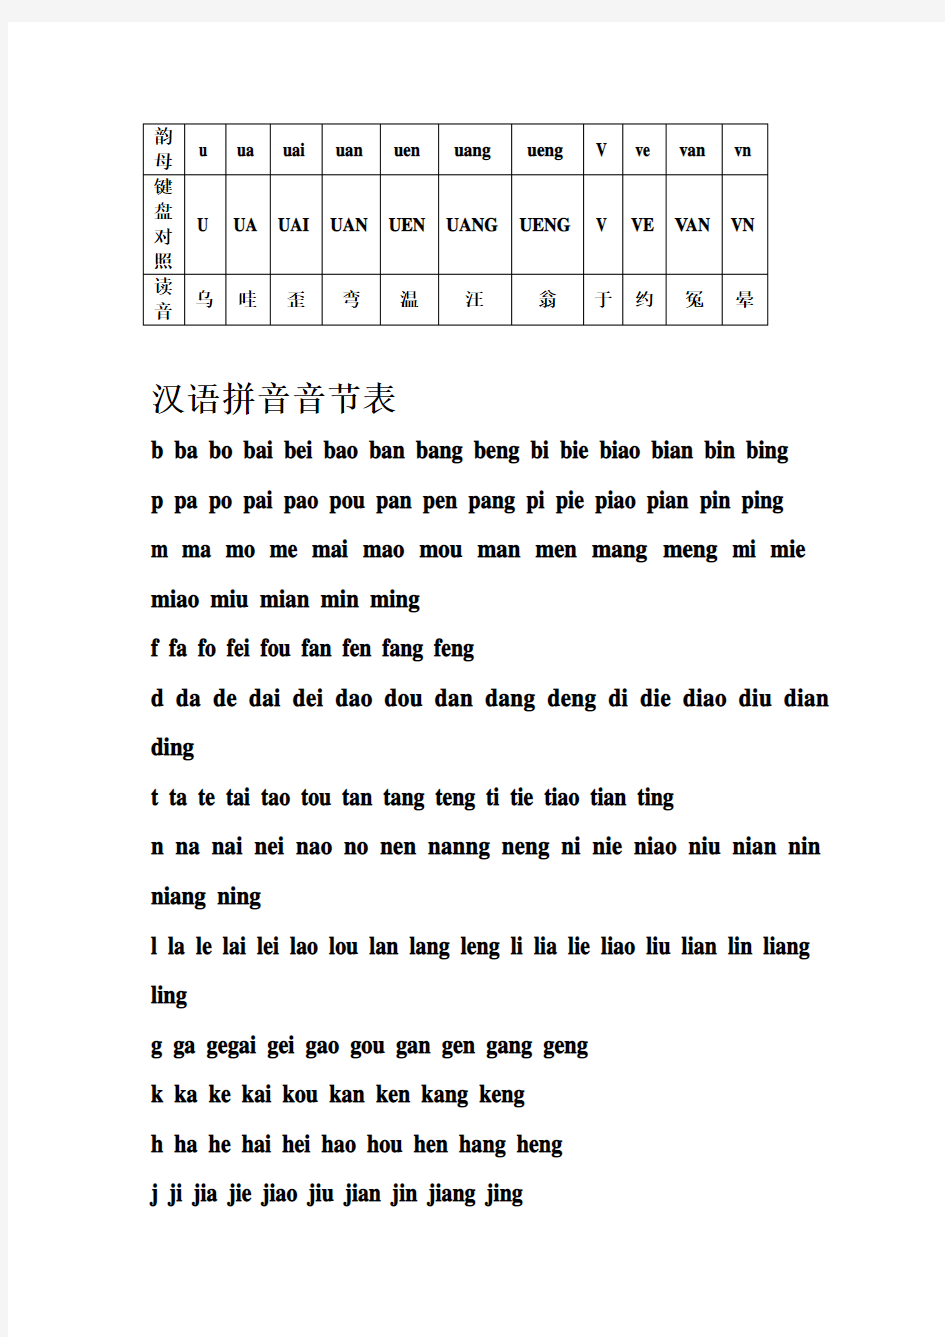 汉语拼音字母表与键盘对照学习打字法